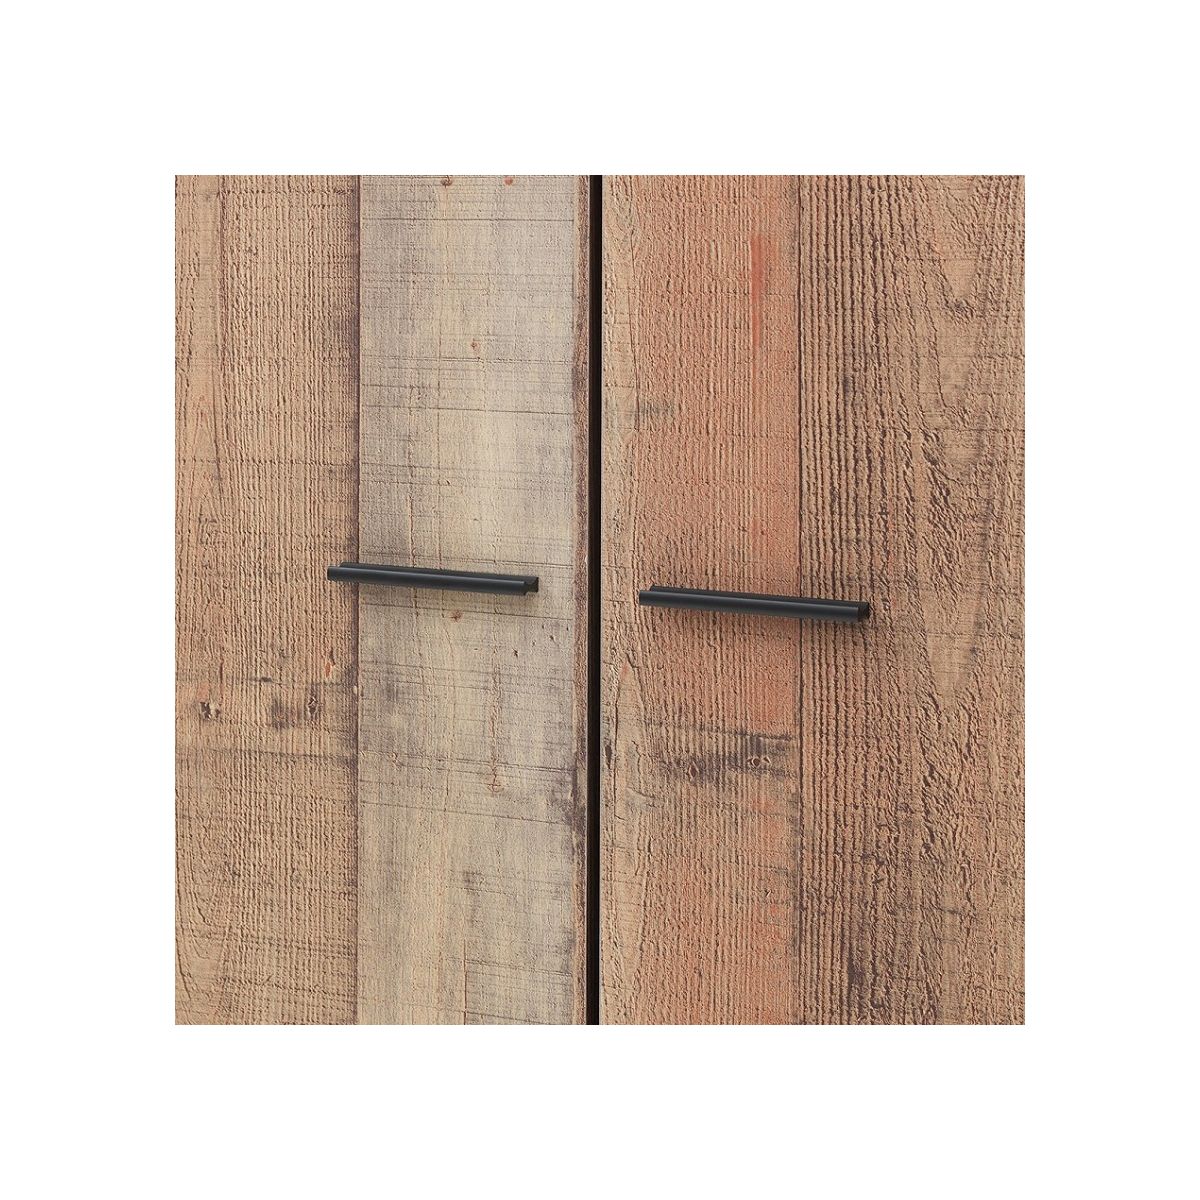 Stretton 2 Door Double Wardrobe - Rustic Oak